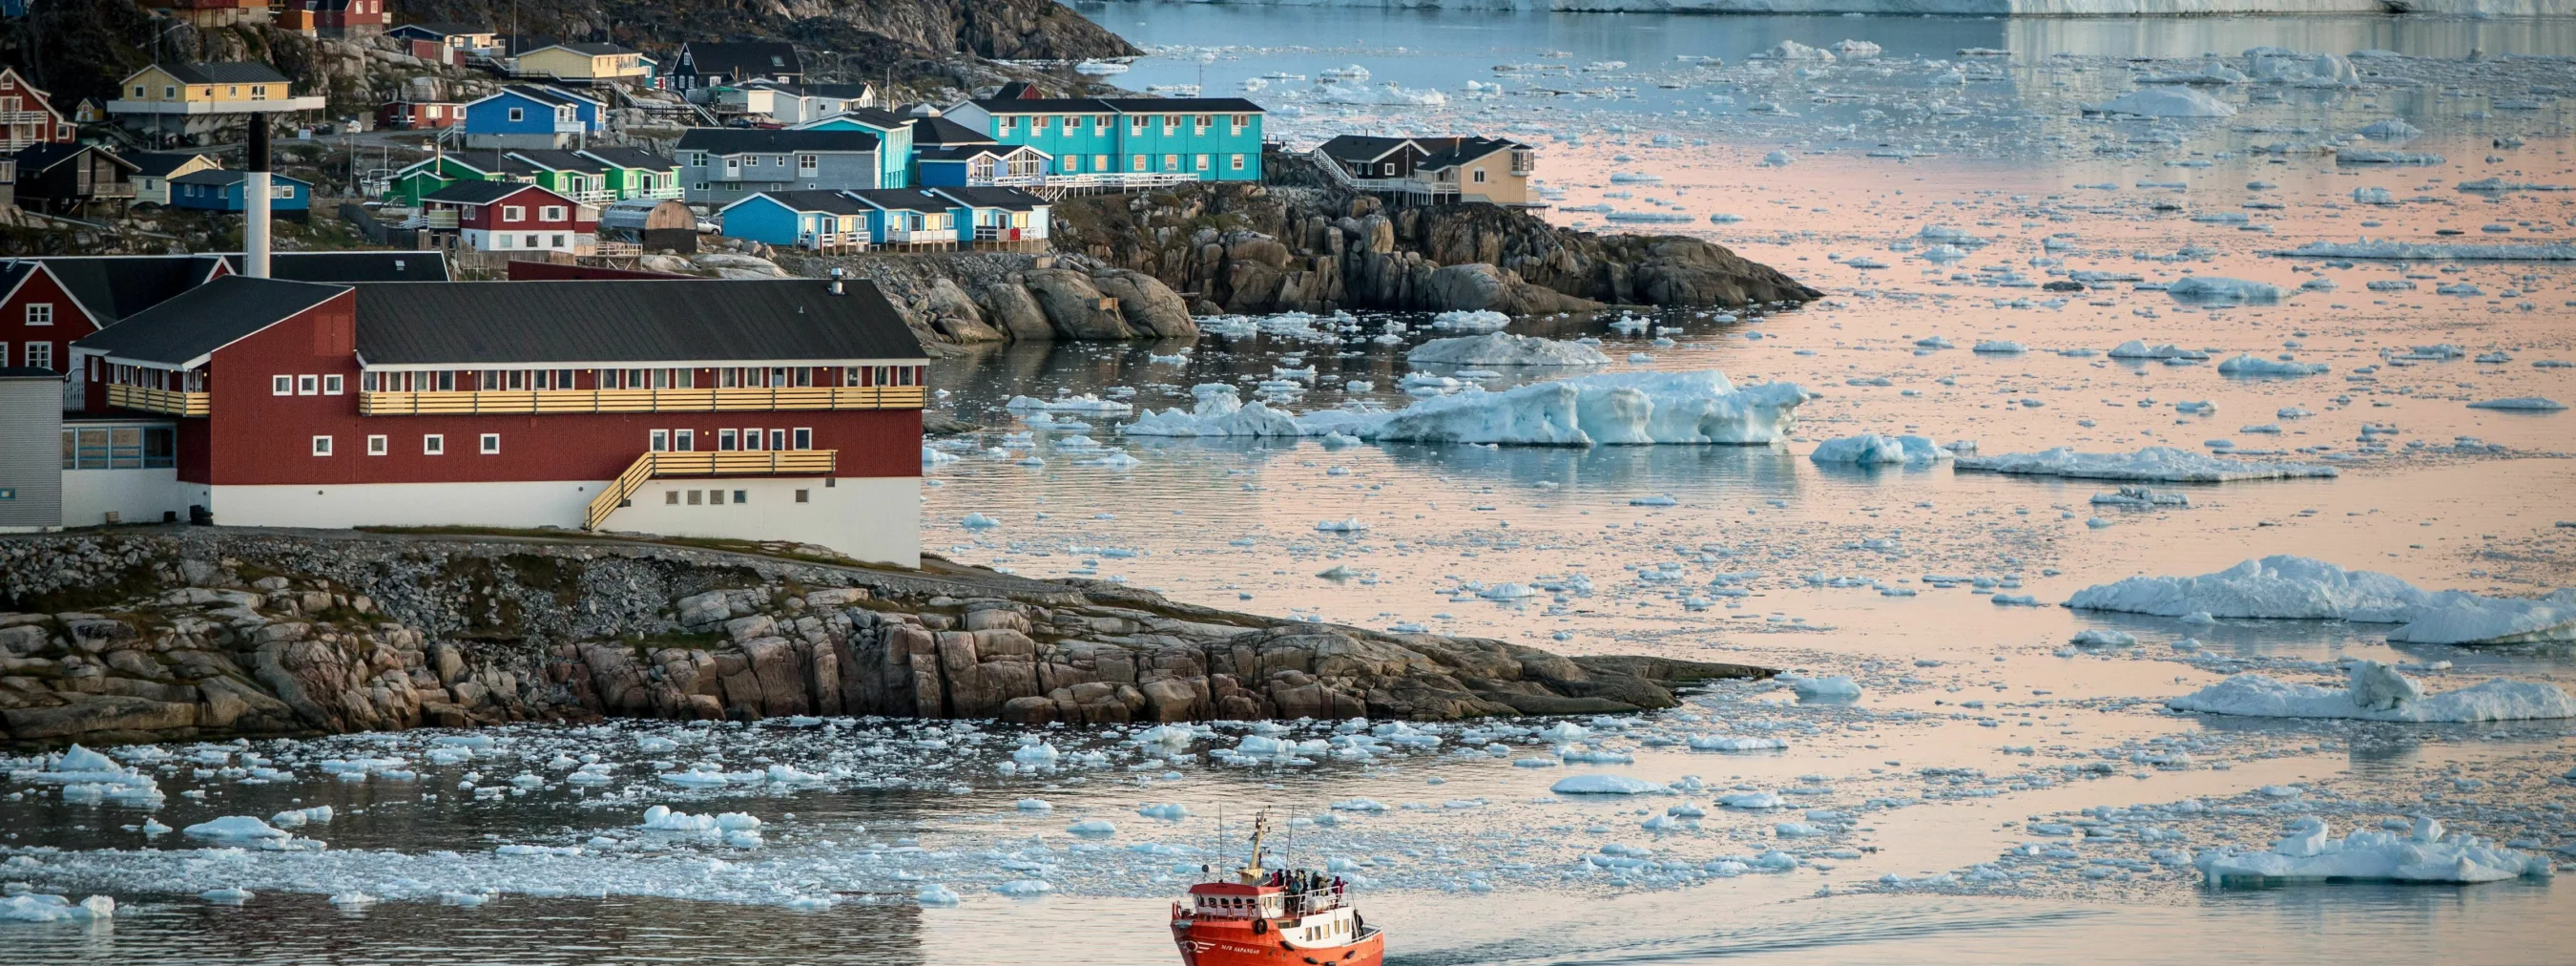 Nordgrönland: Hafen Ilulissat; 
kleines Schiff fährt im Hafen ein, im Hintergrund Eisberge